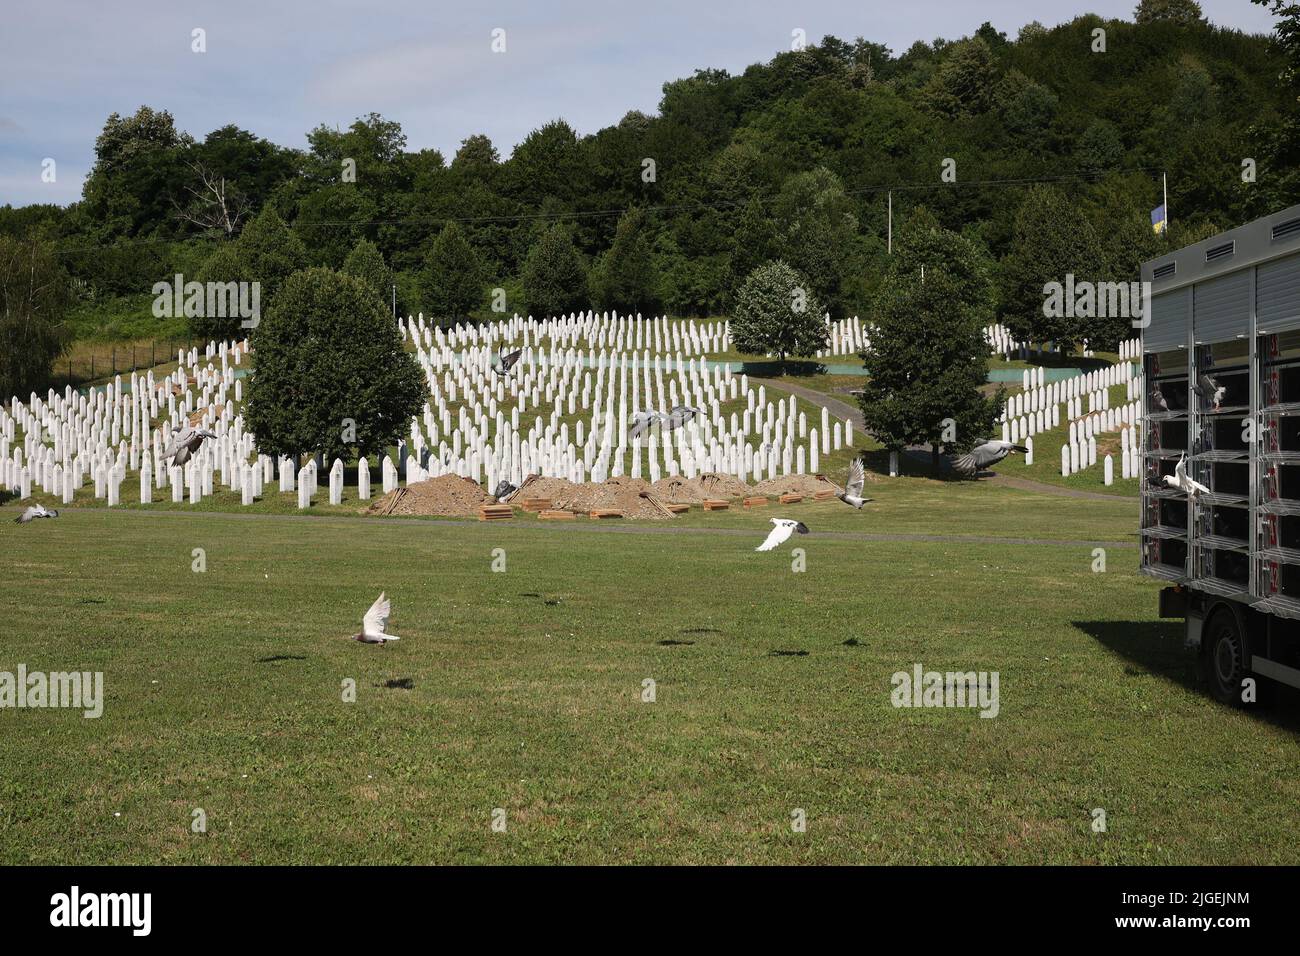 Dans le cadre de la commémoration du 27th anniversaire du génocide qui a commencé en juillet 1995 à Srebrenica, dans le cimetière du Centre commémoratif de Srebrenica - Potocari, des colombes de paix ont été libérées dans les airs, à Potocari, en Bosnie-Herzégovine, sur 10 juillet 2022. Photo: Armin Durgut/PIXSELL Banque D'Images